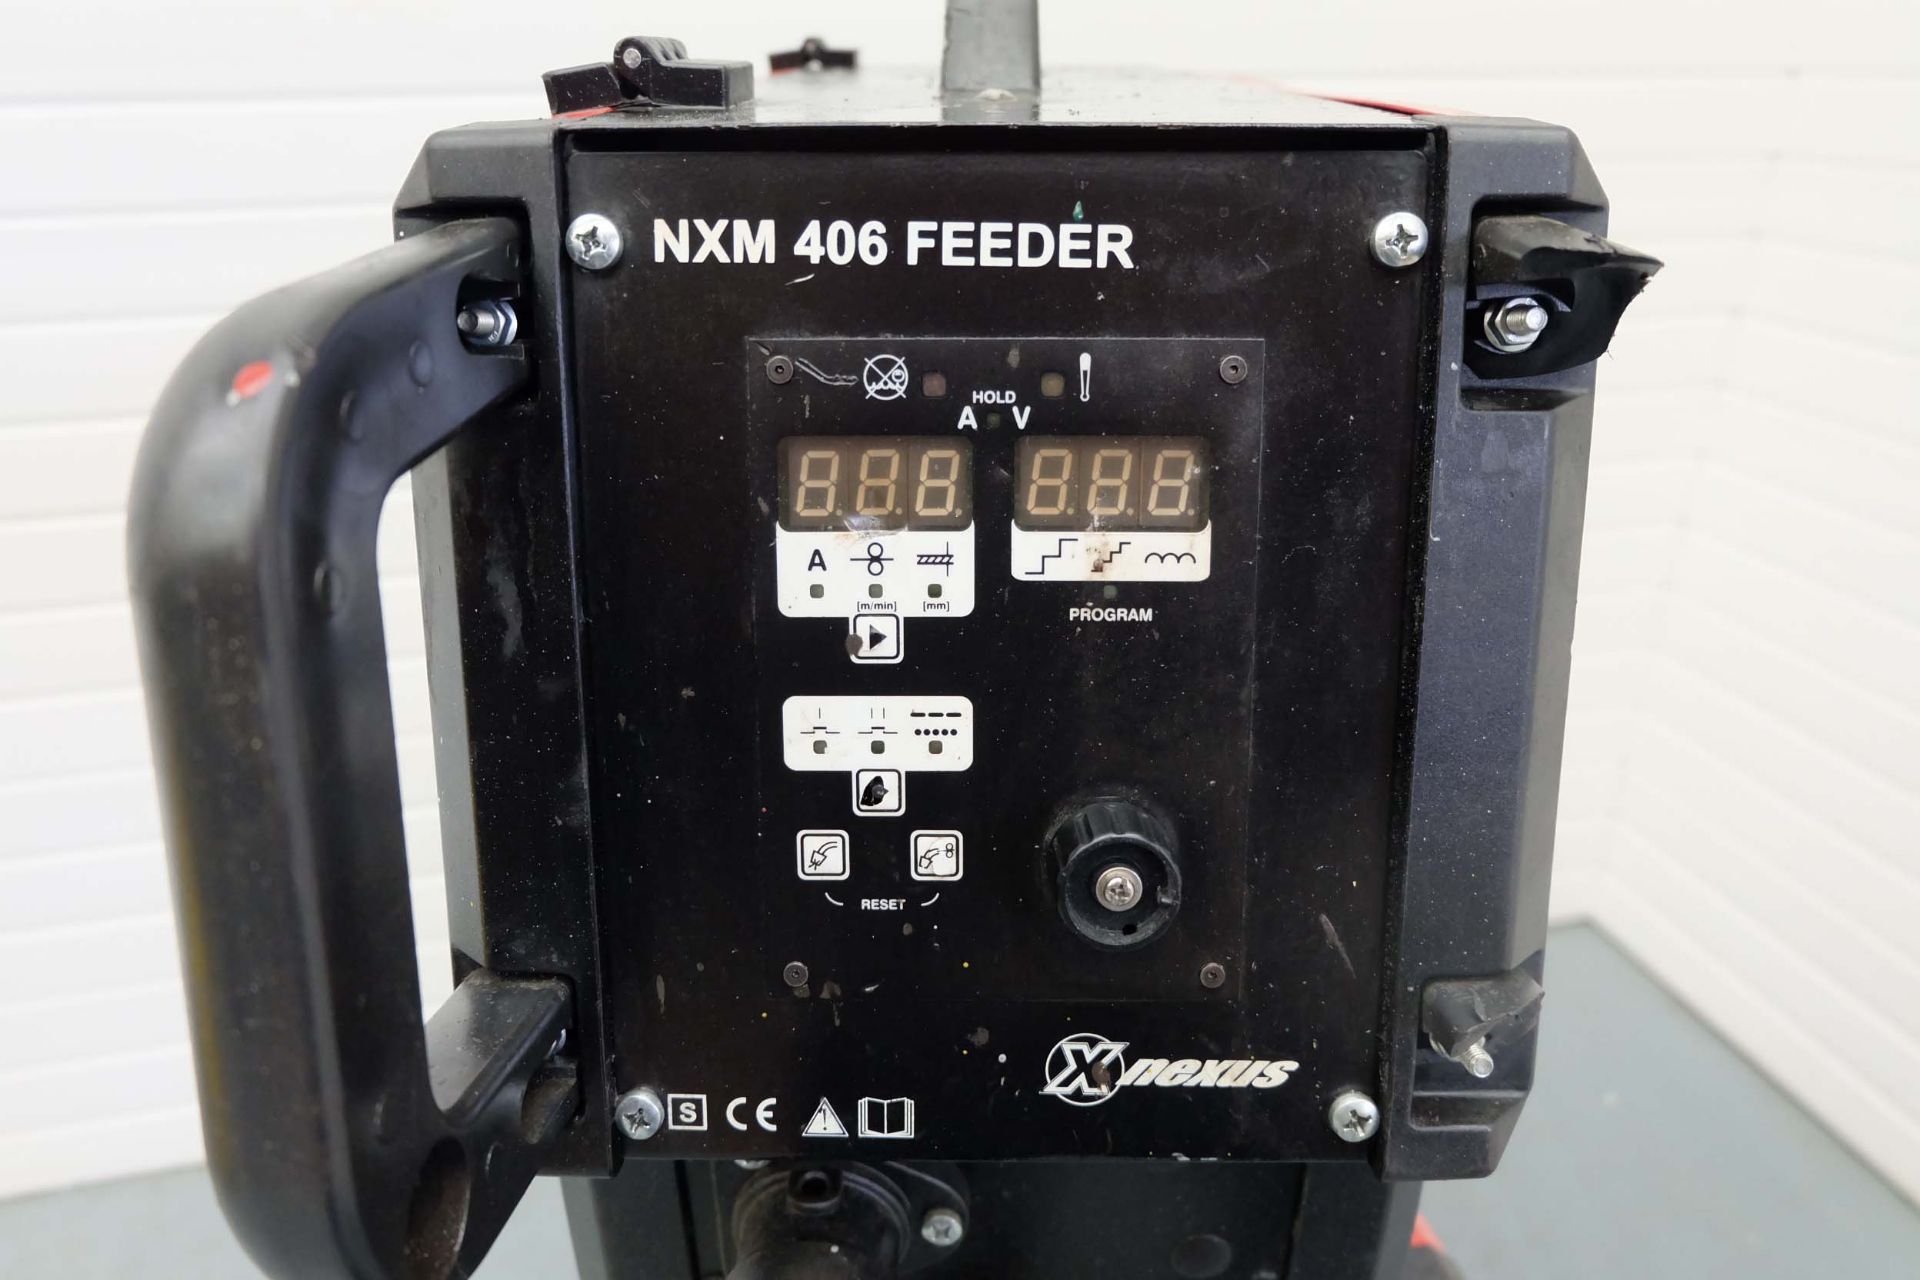 Nexus Type NXM 406 TER Generator Gas Mig Welding Machine. With NXM 406 Feeder. Welding Current Range - Image 5 of 10